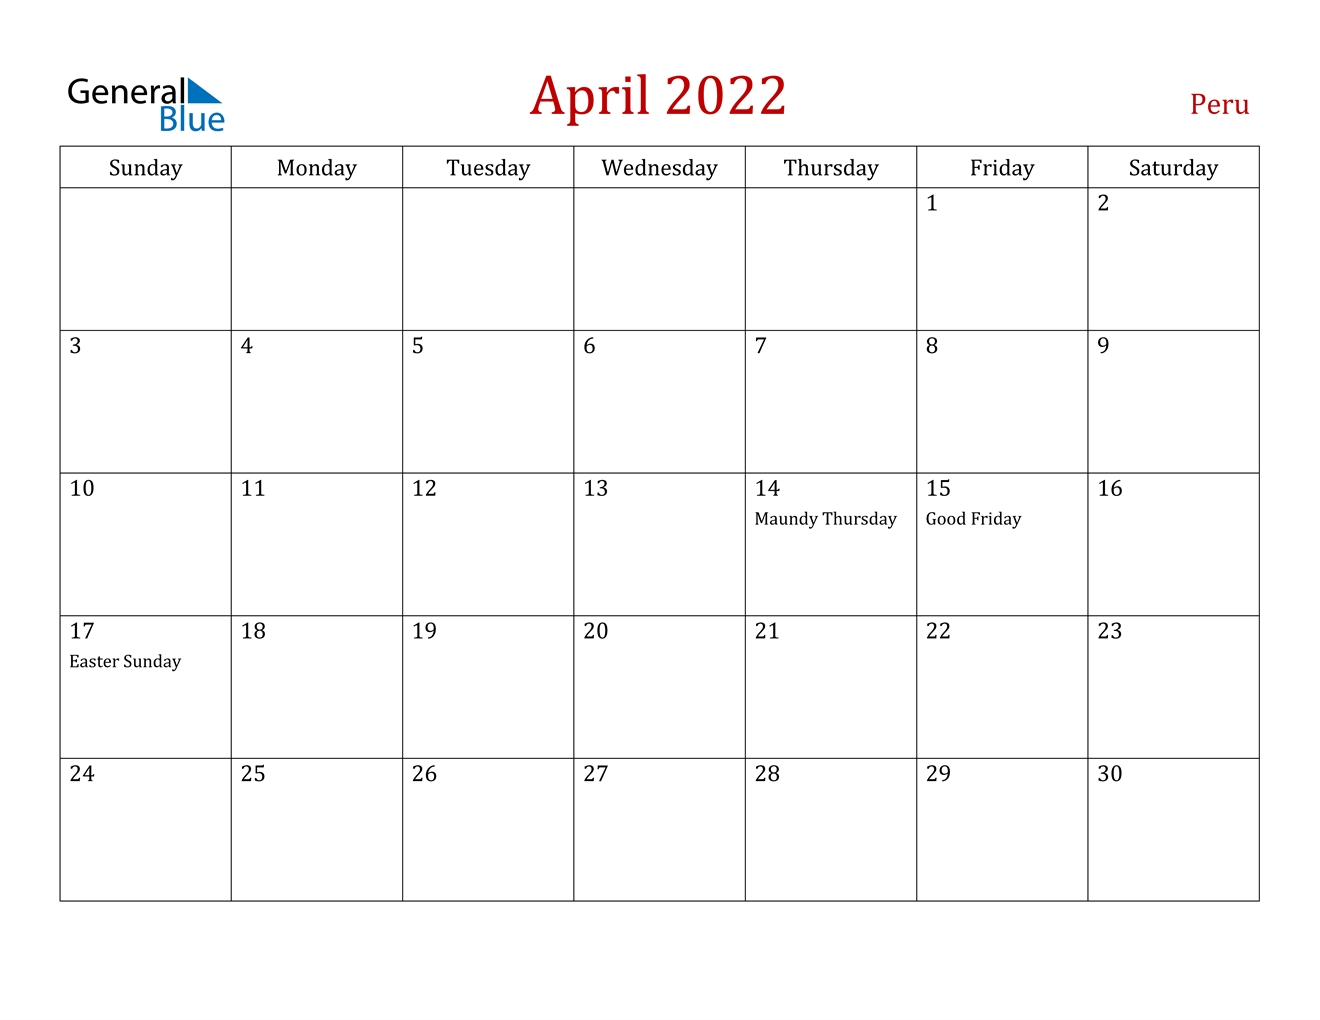 April 2022 Calendar - Peru